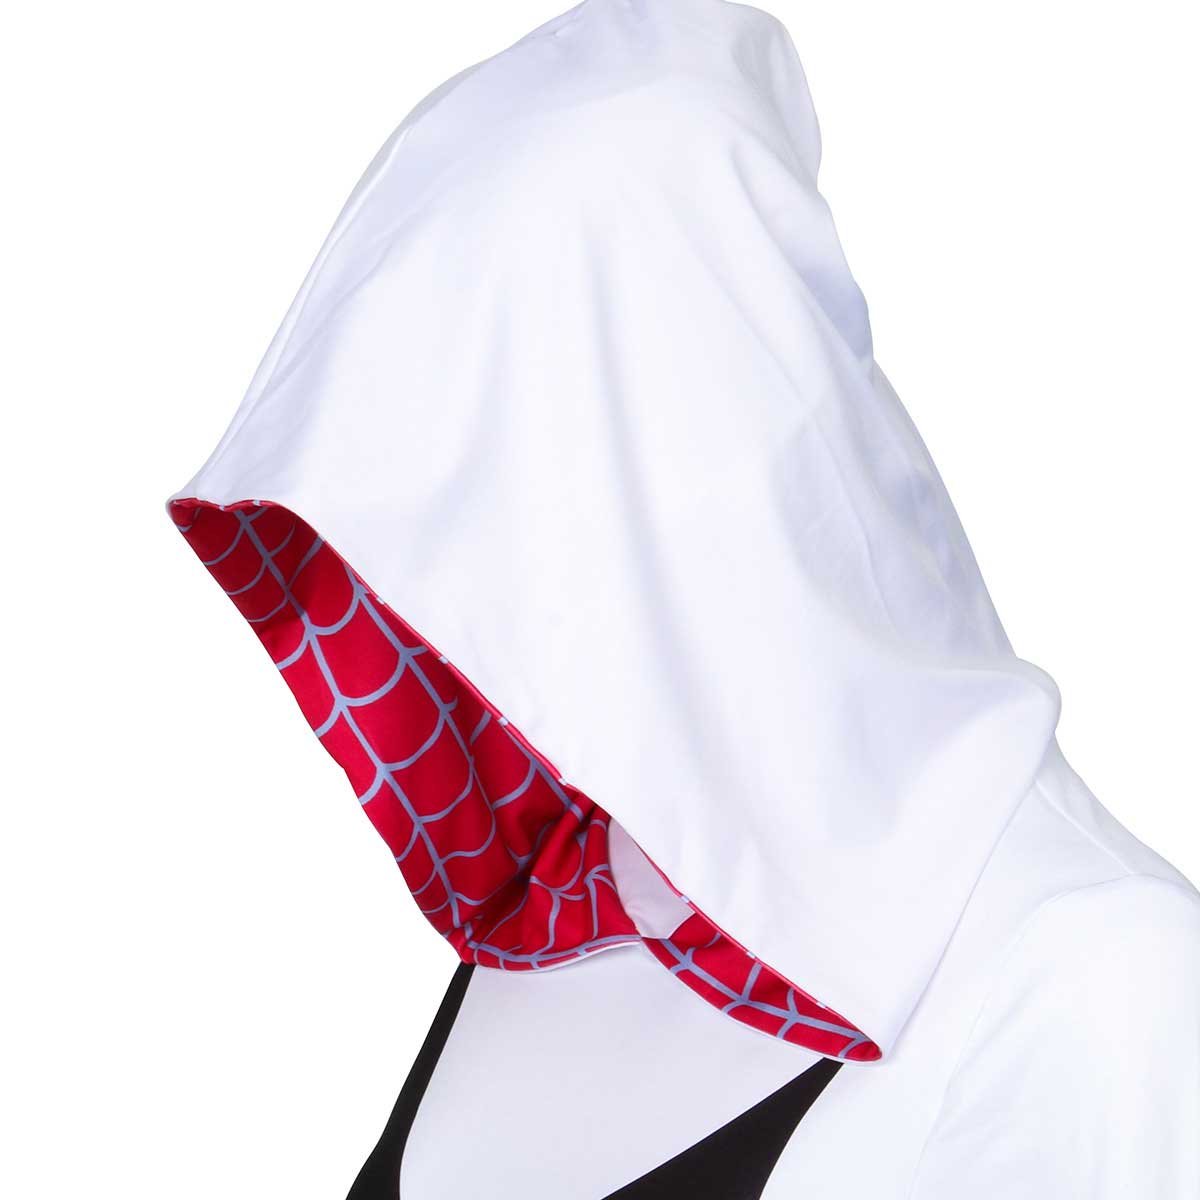 Spider-Man: Into the Spider-Verse Spider-Gwen Cosplay Costume